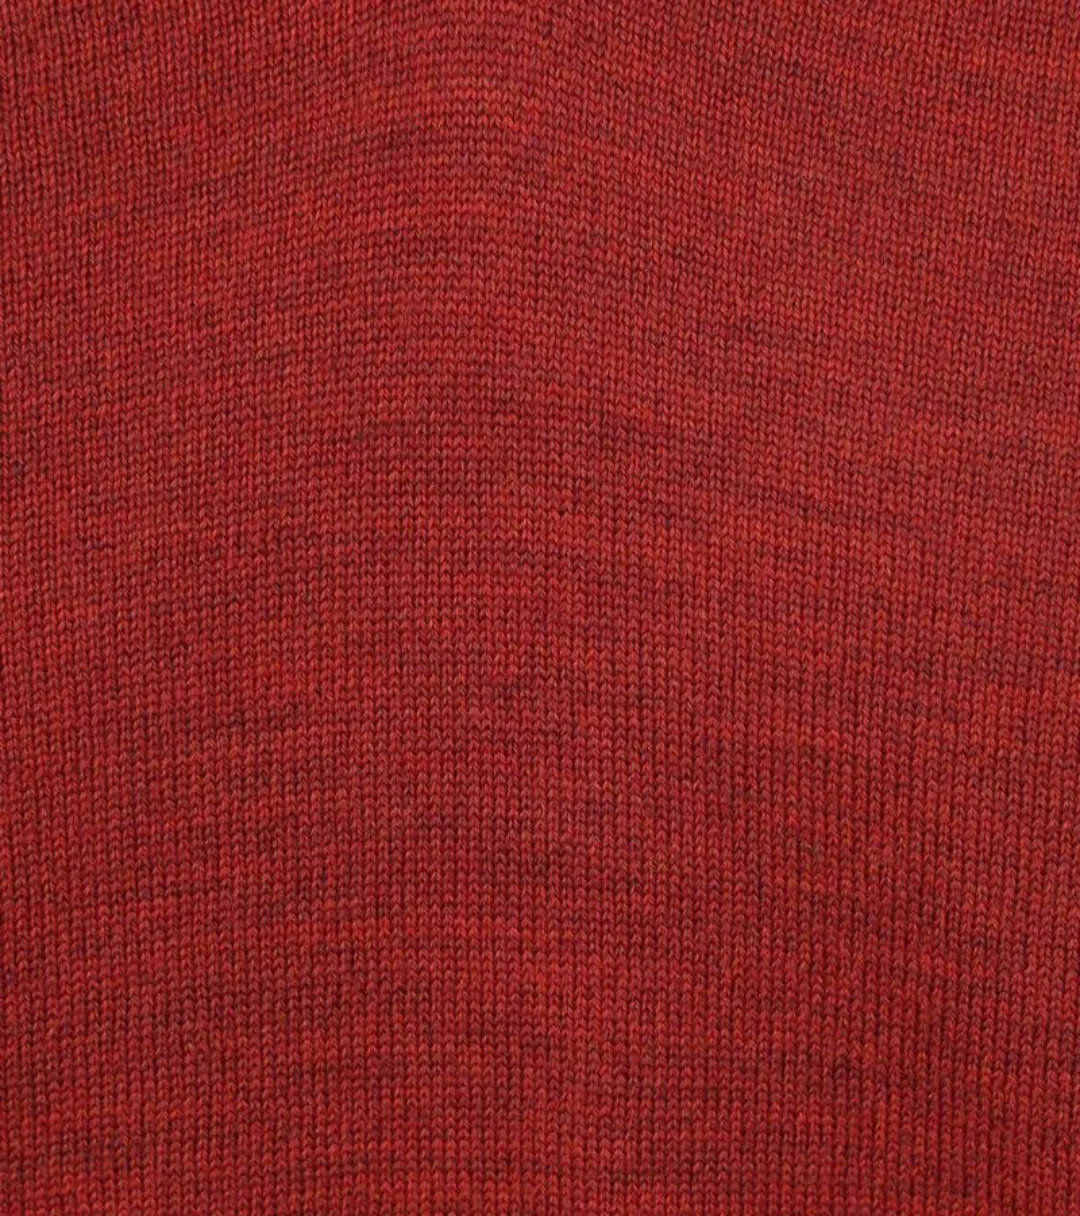 Olymp Casual Pullover Wolle Rot - Größe 3XL günstig online kaufen